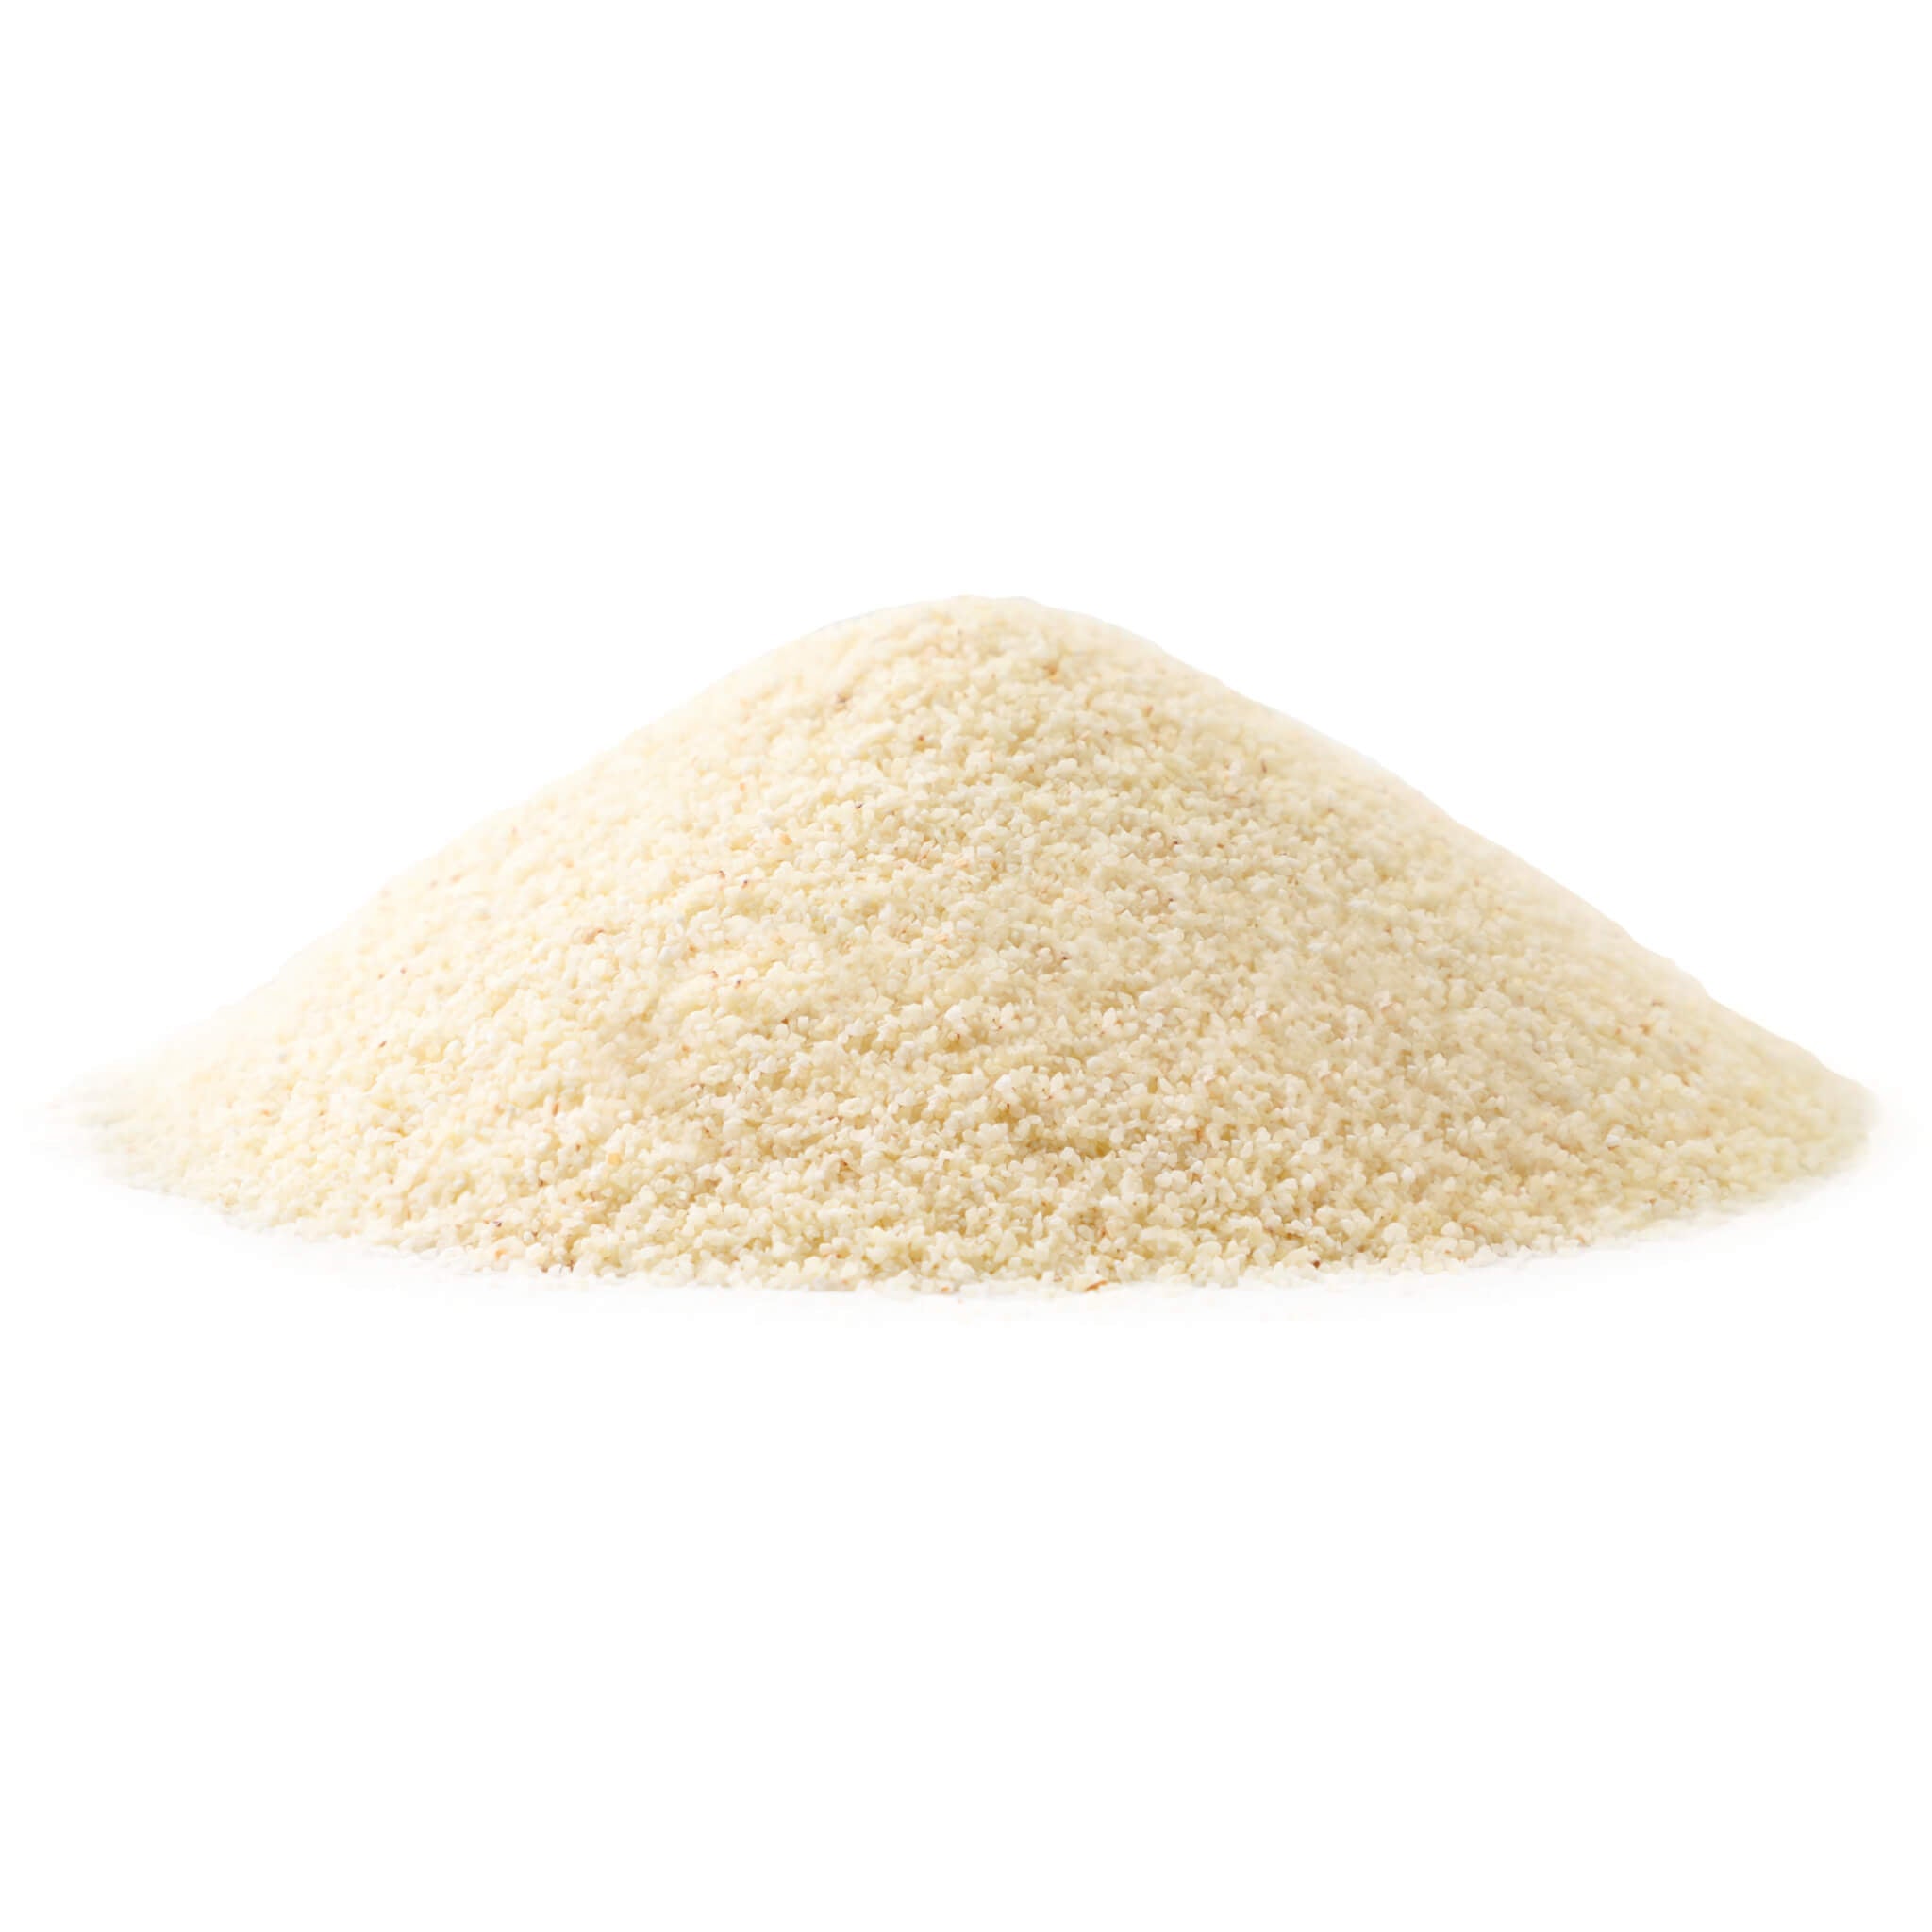 Semoule de blé dur blanc (Durum) biologique (Milanaise) — OnlineOrganics